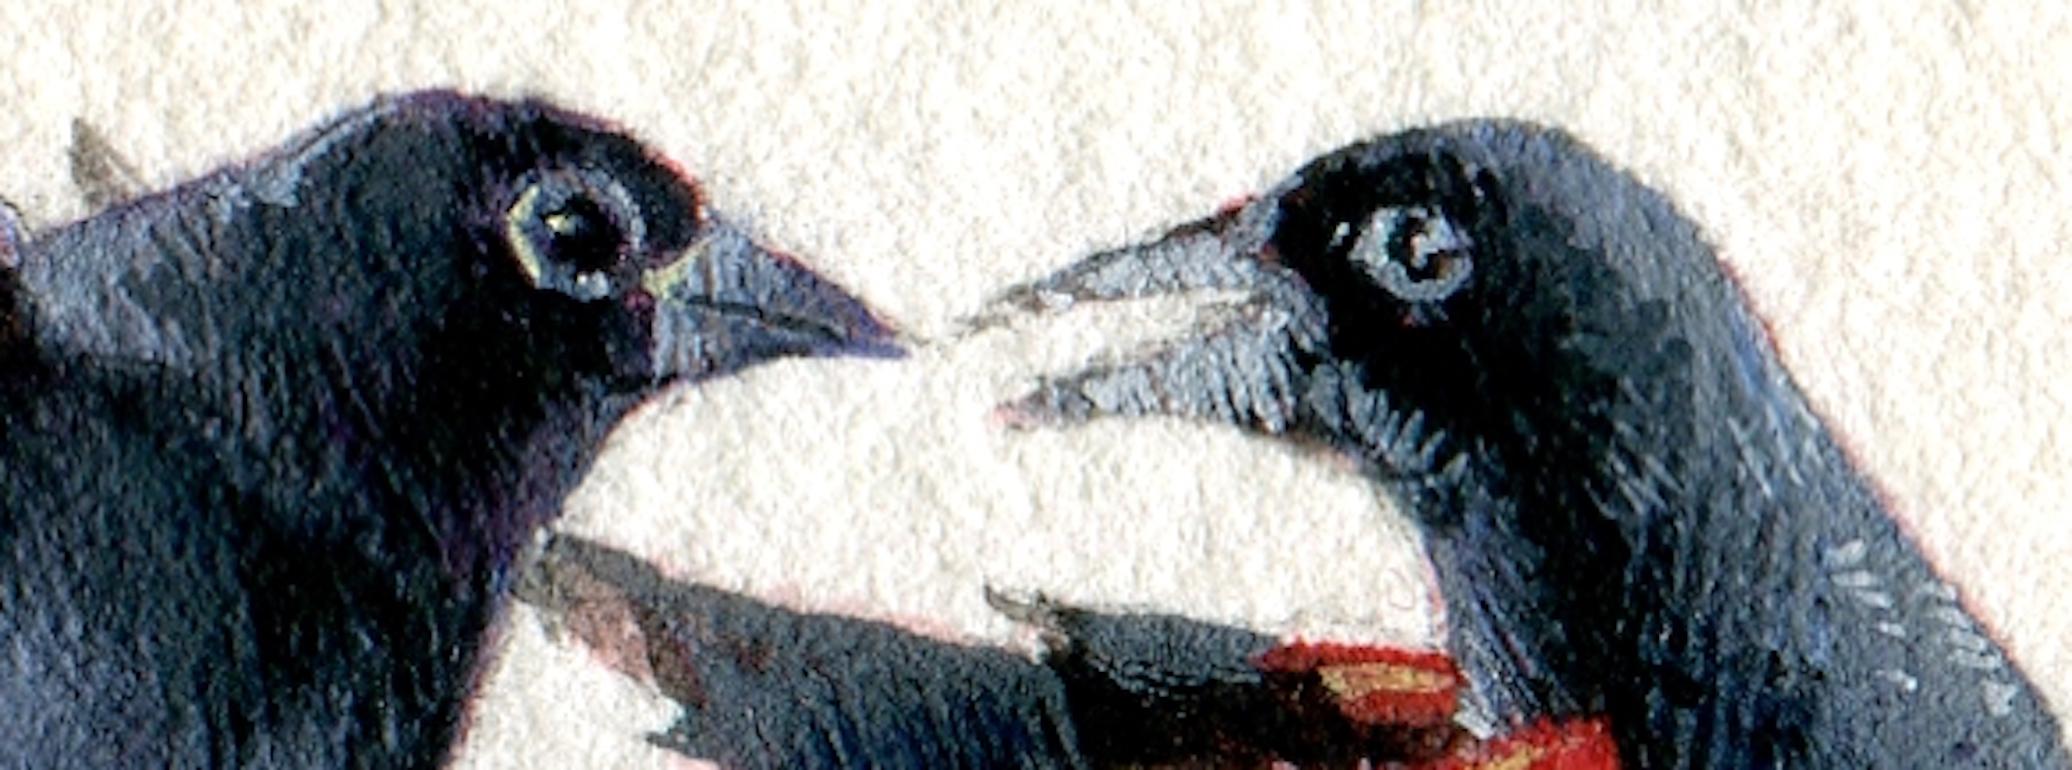 Rot geflügelte schwarze Vögel, realistisches Miniatur-Vogelporträt in Gouache auf Papier, 2020 (Realismus), Art, von Dina Brodsky